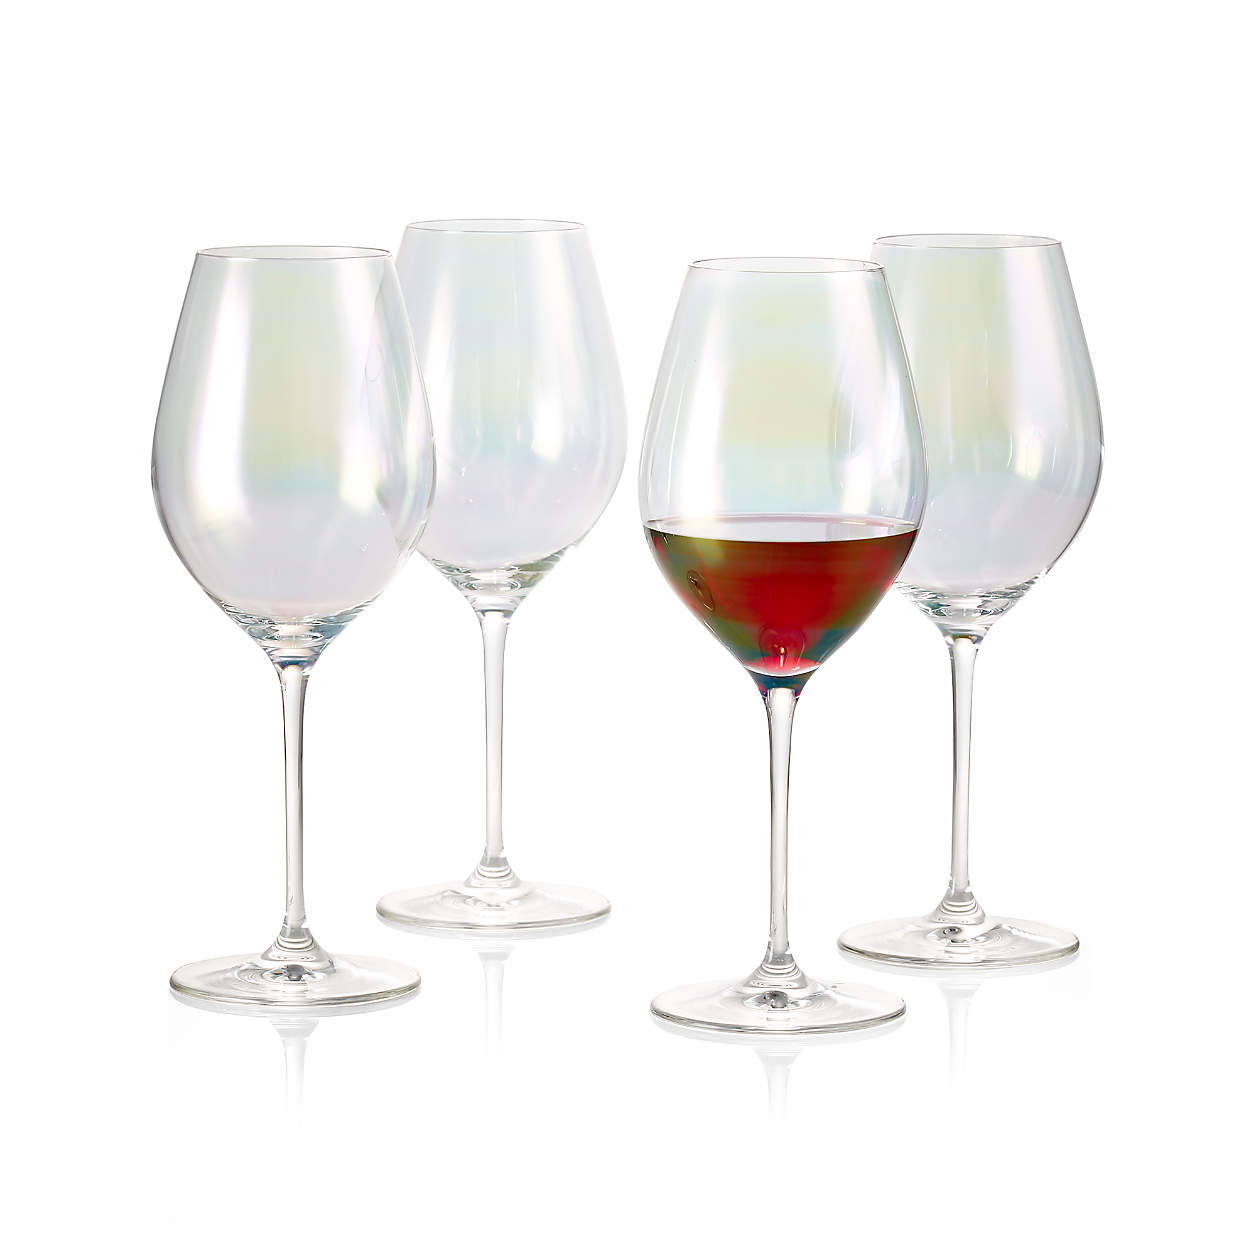 Lunette Wine Glasses